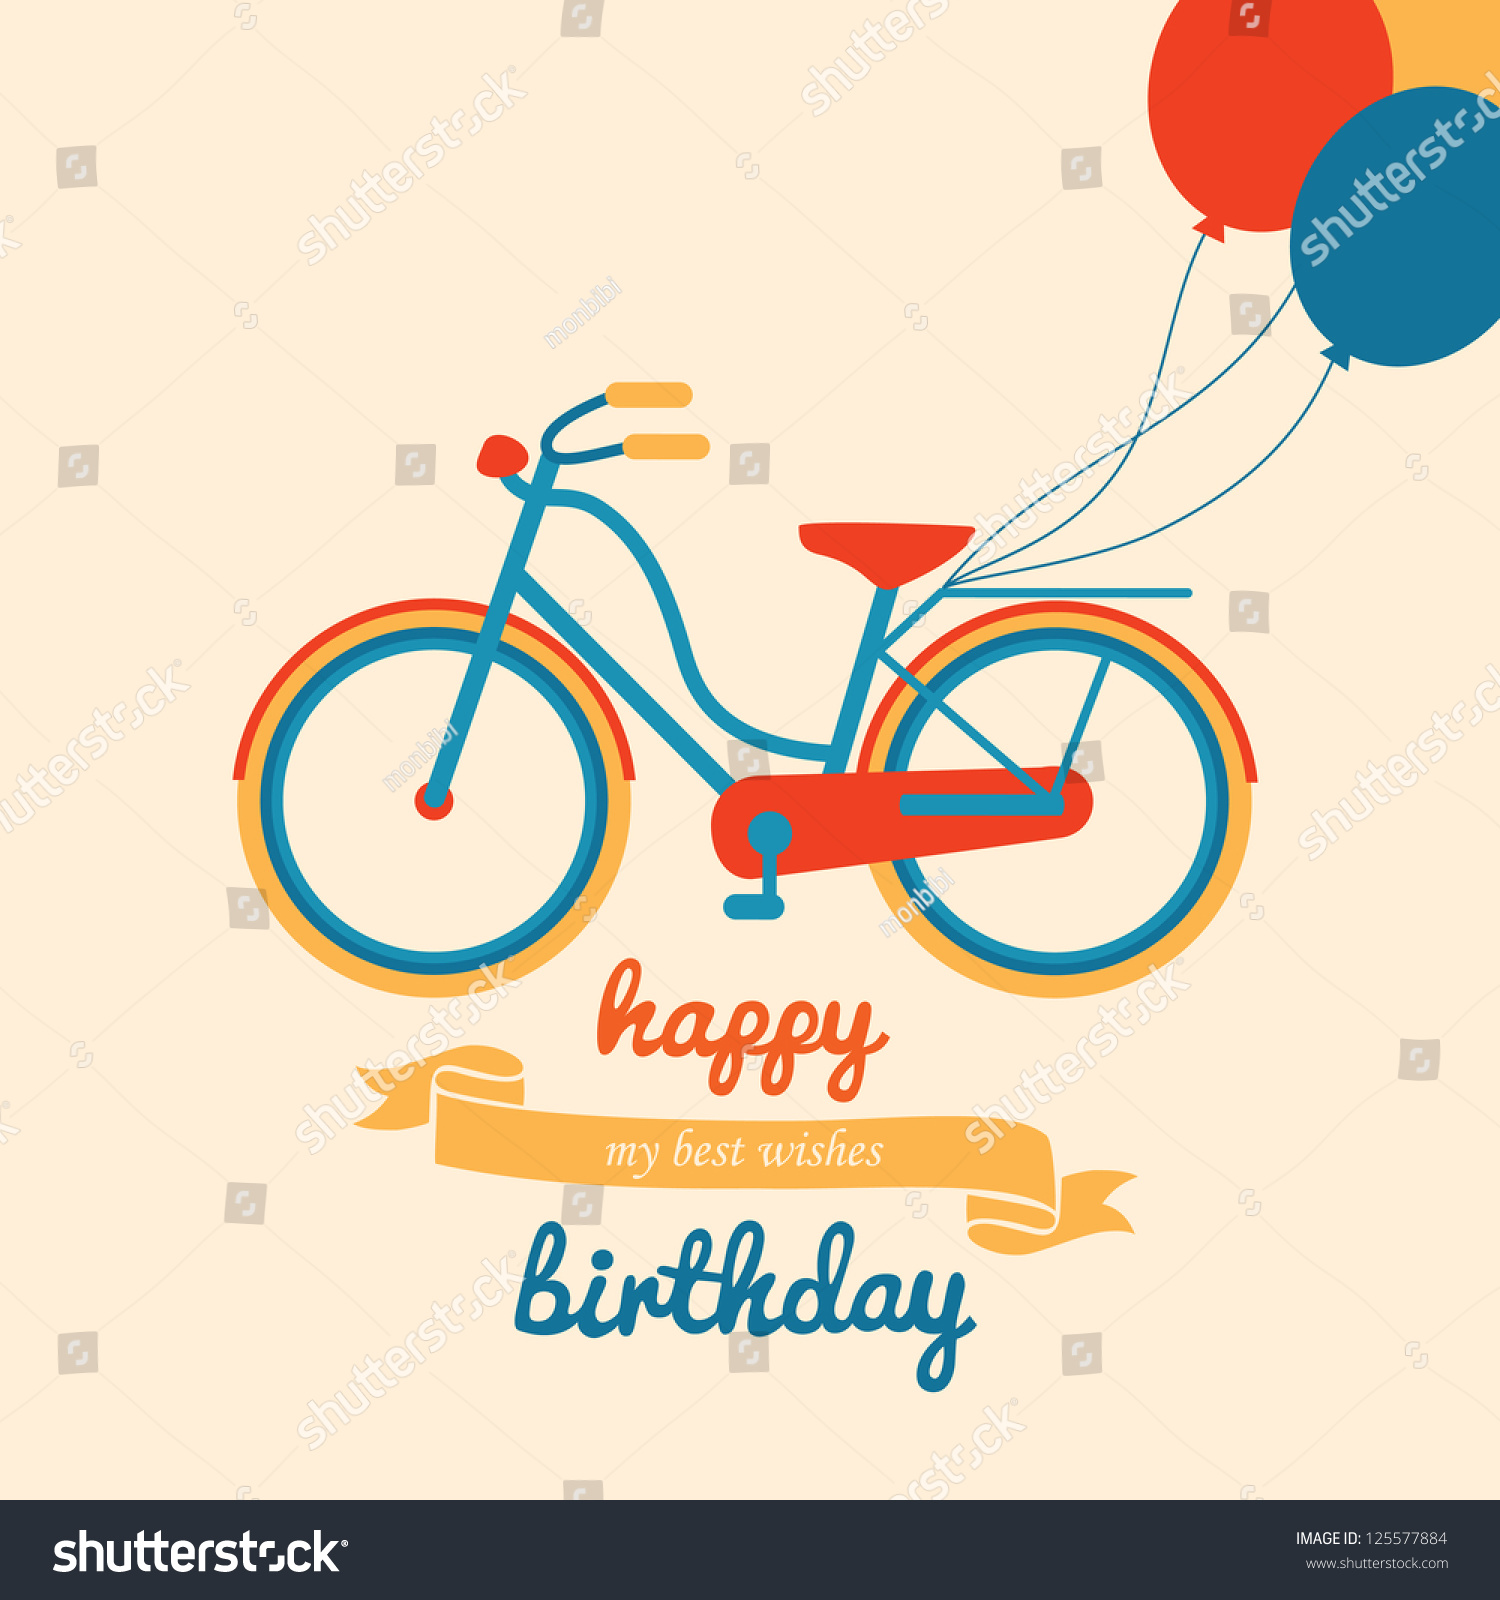 Bike Happy Birthday illustration